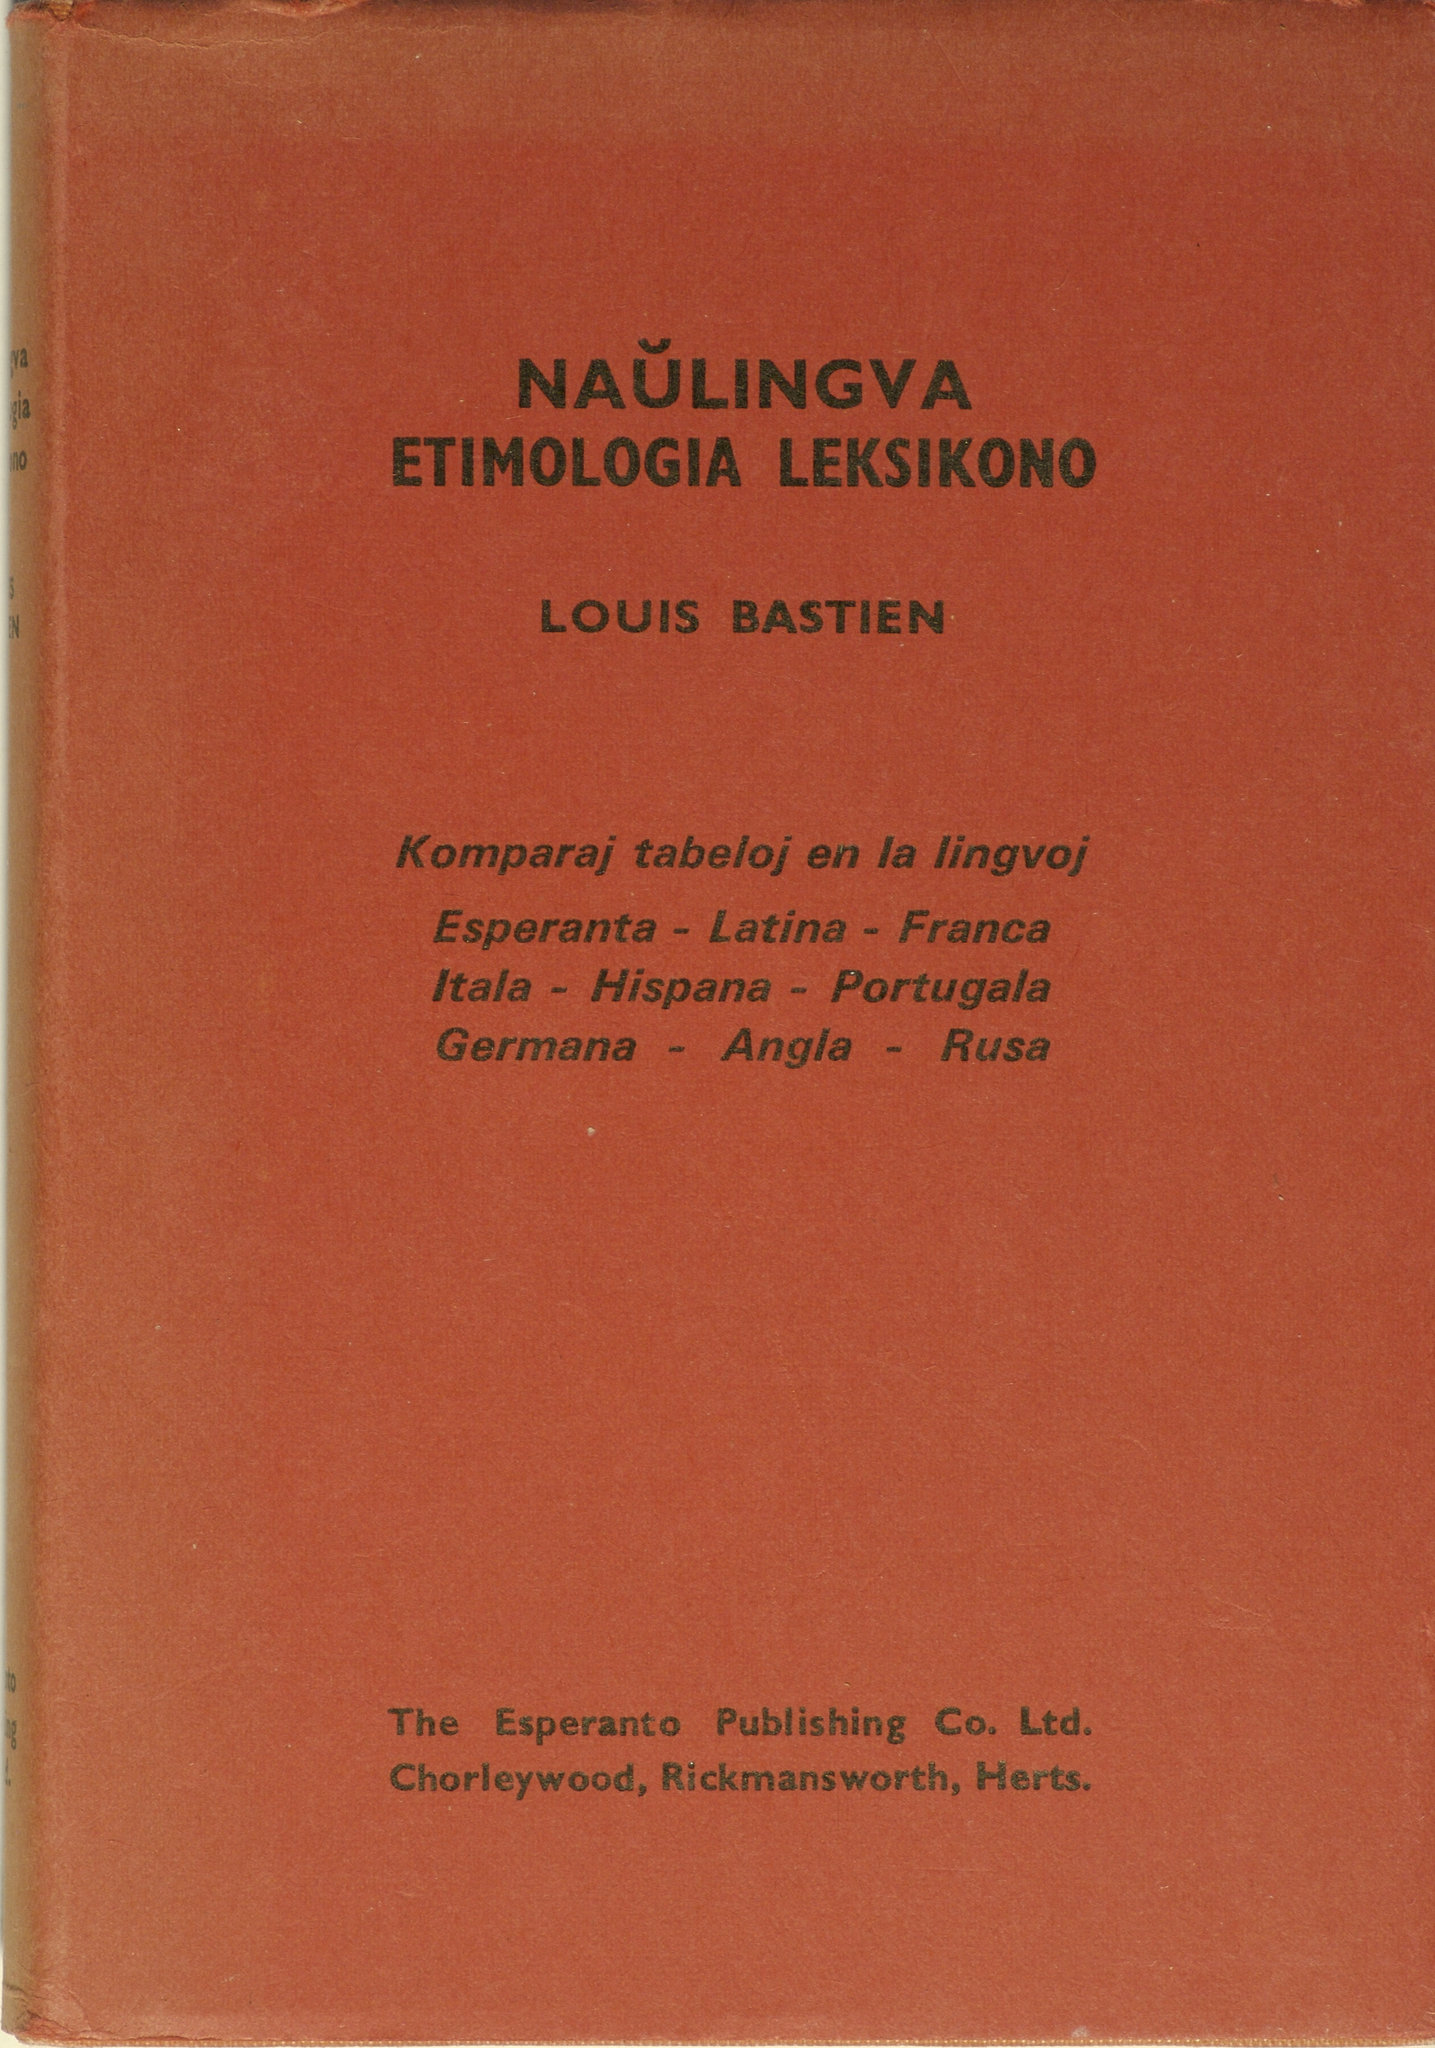 Naŭlingva Etimologia leksikono, Louis Bastien